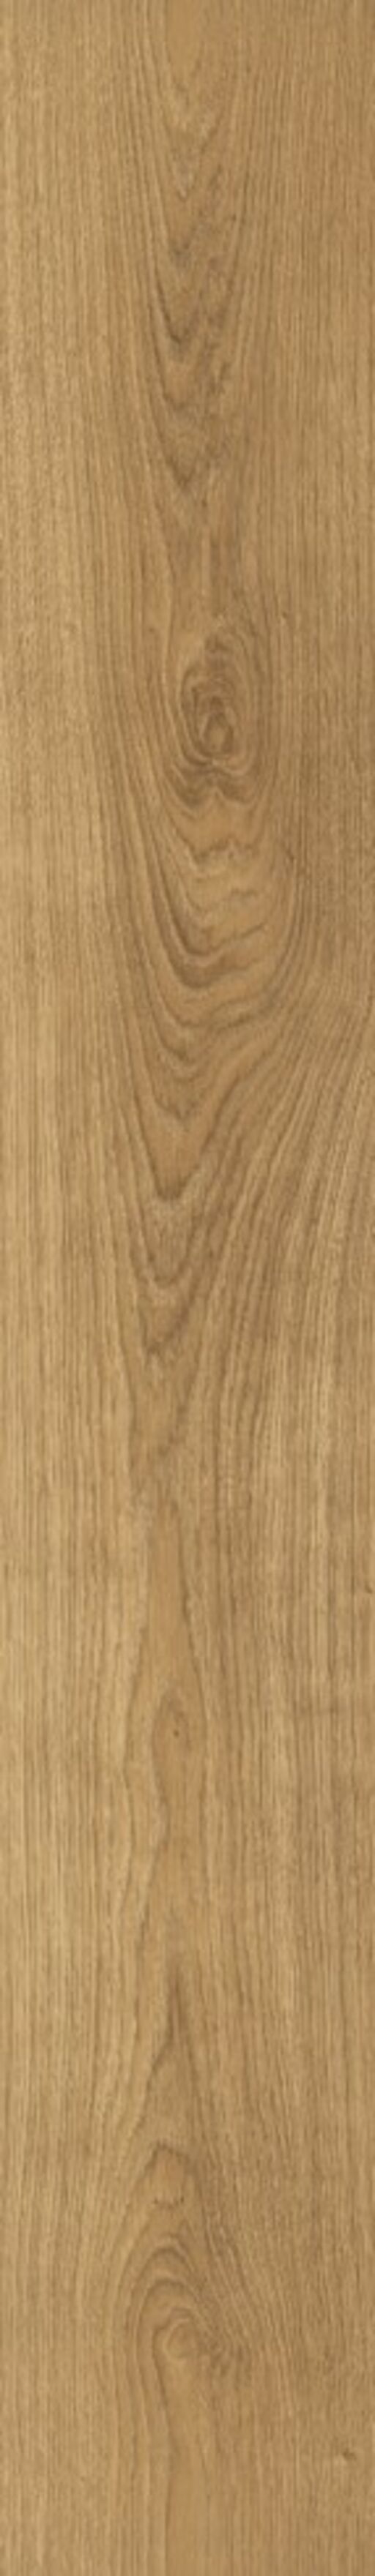 Woodland, Glenmore Oak Laminate Flooring, 8mm Image 2